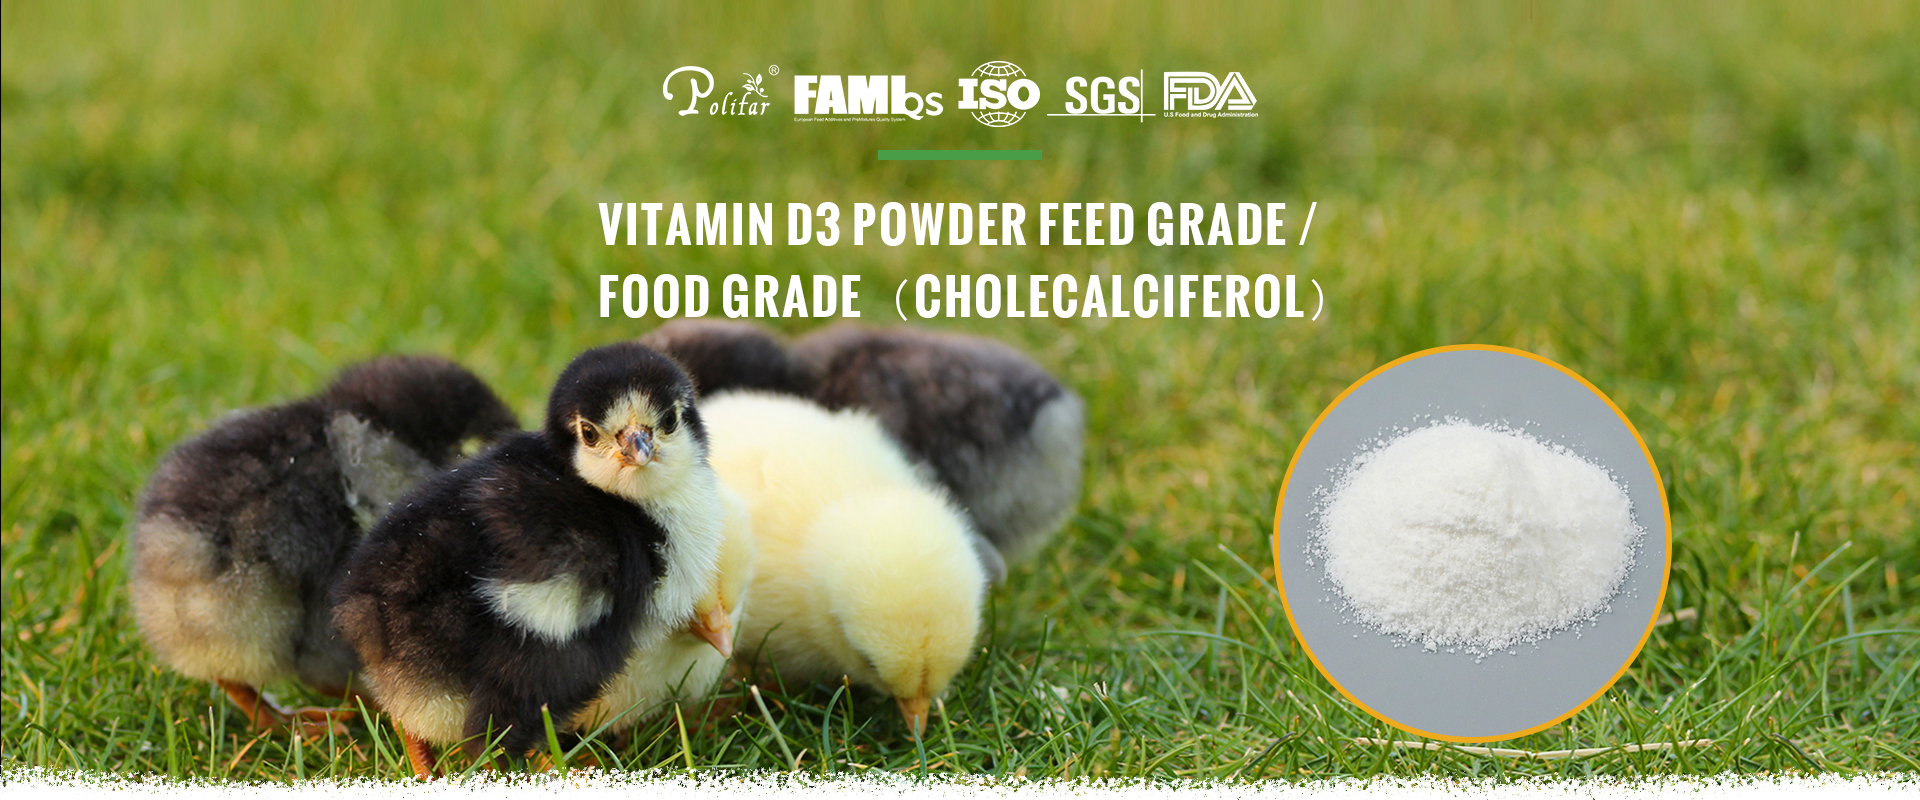 Vitamin D3 Powder feed grade